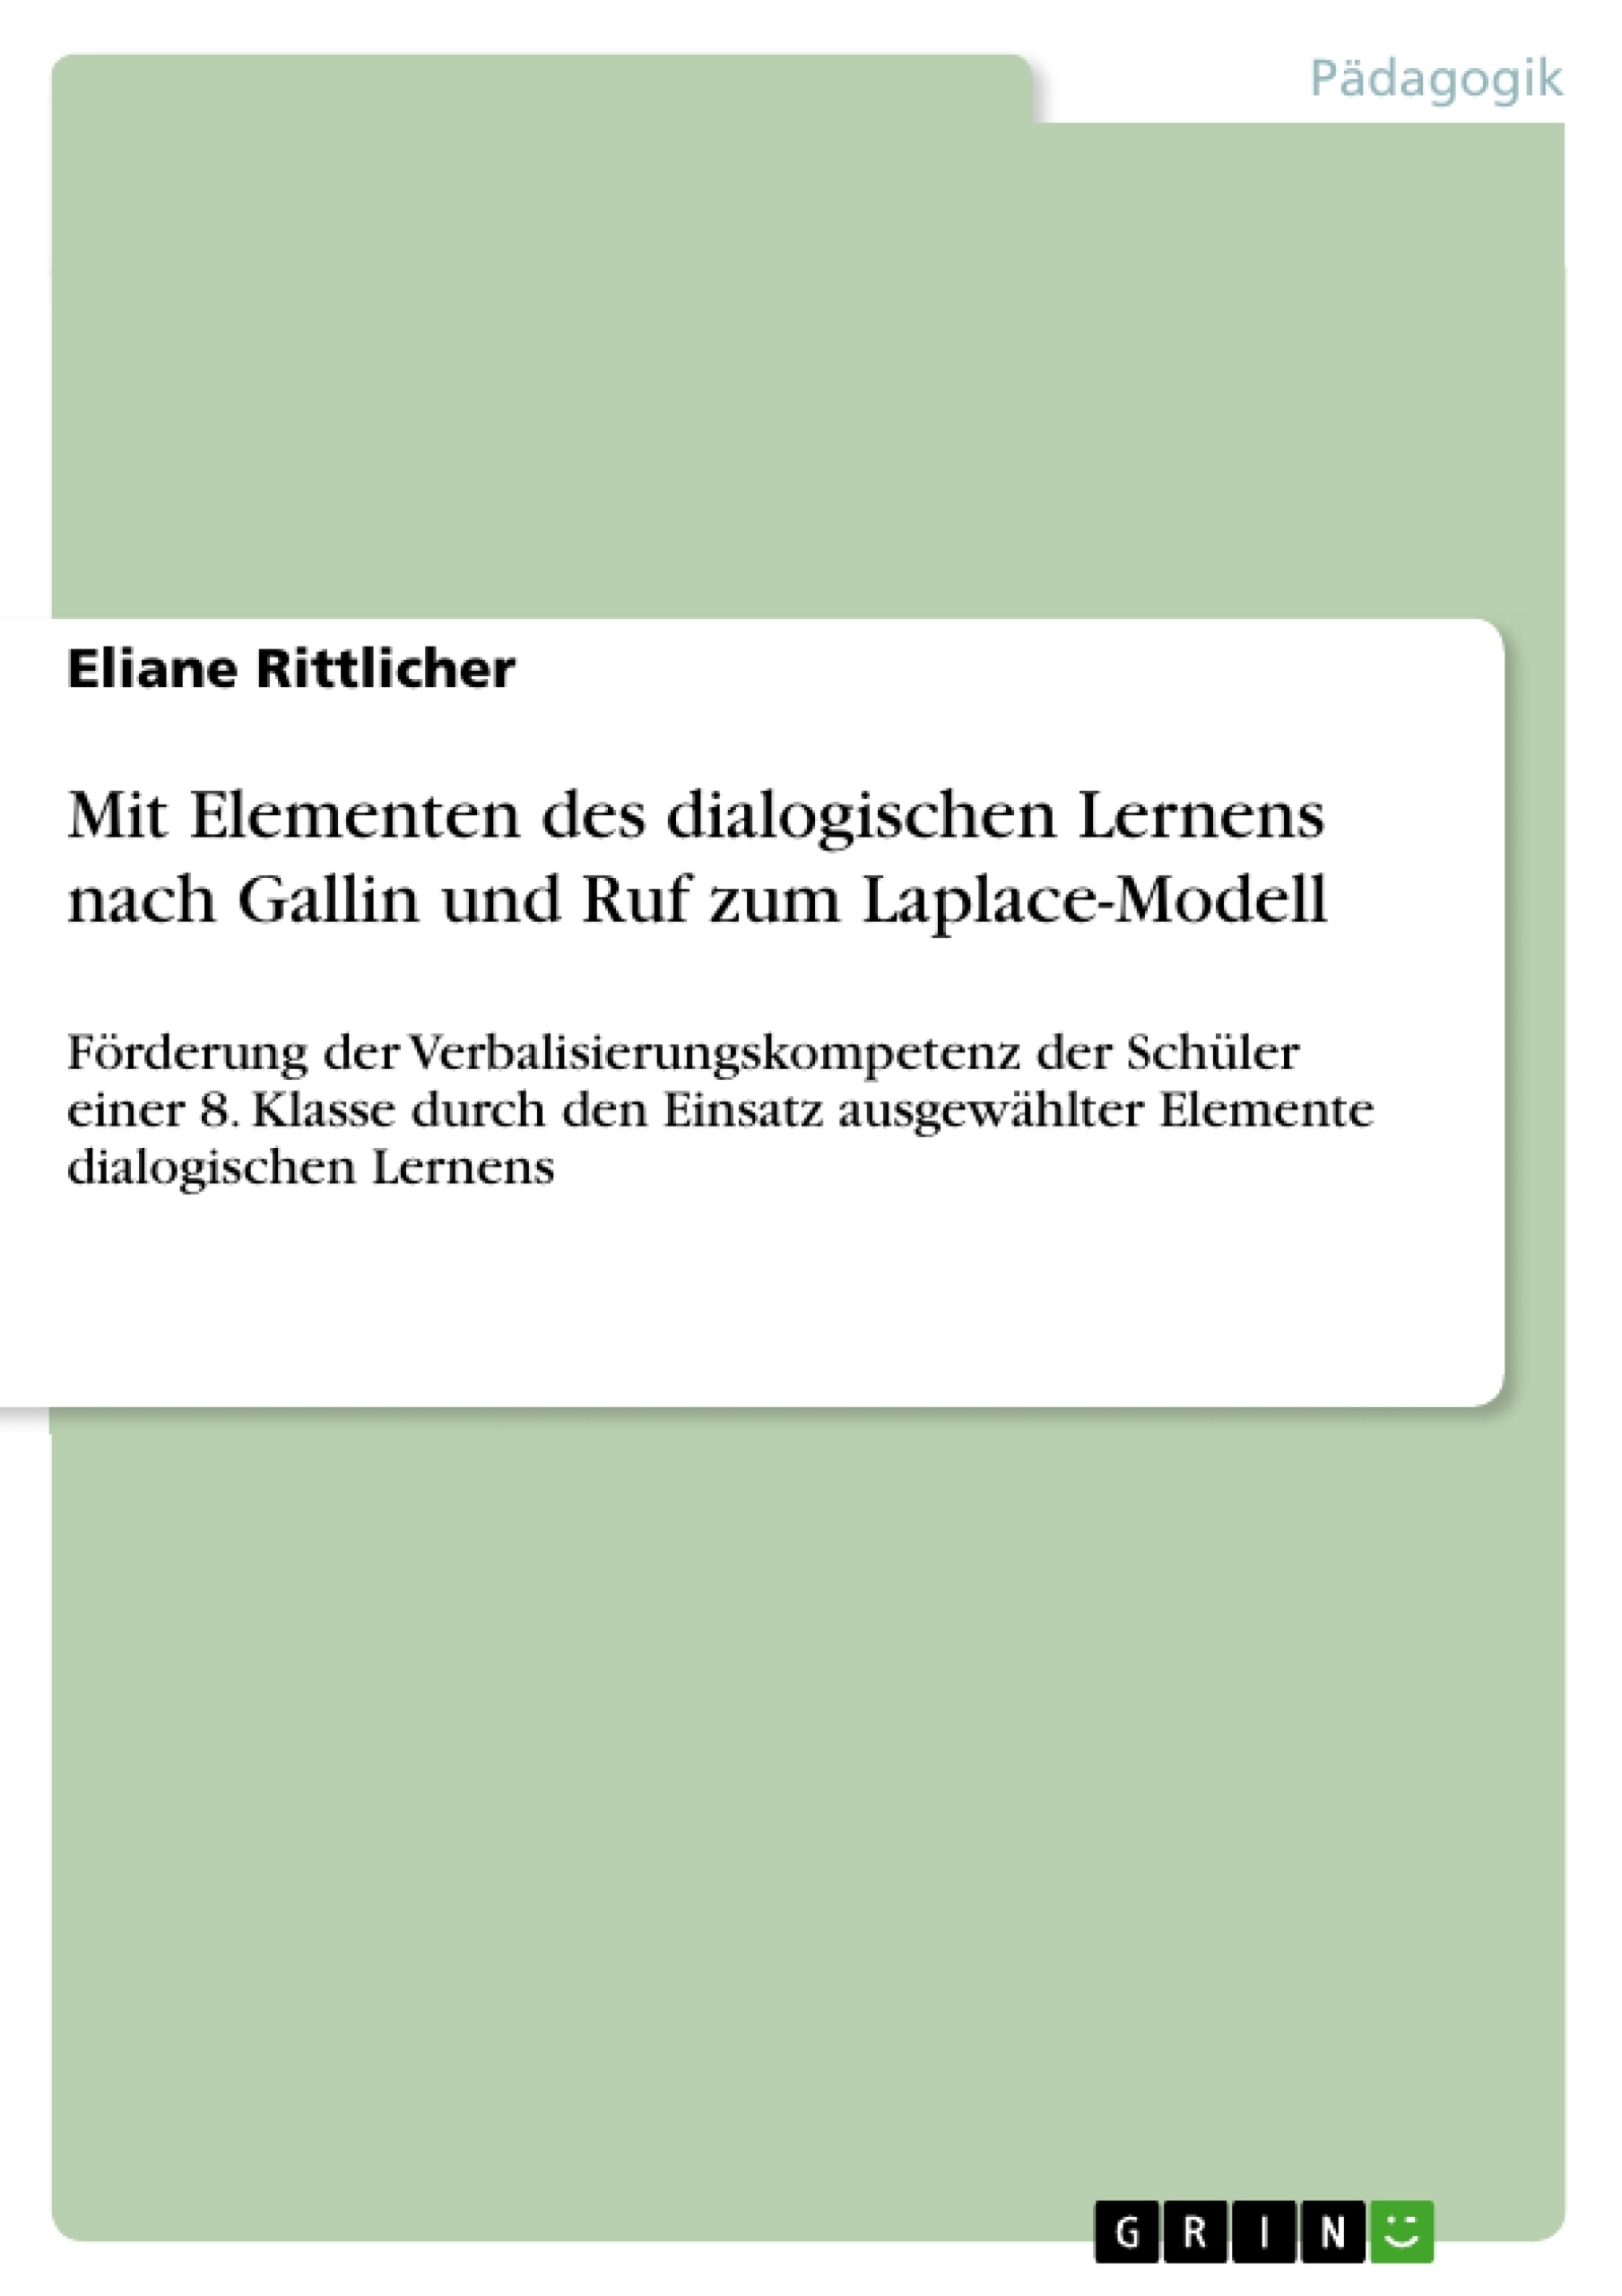 Titre: Mit Elementen des dialogischen Lernens nach Gallin und Ruf zum Laplace-Modell